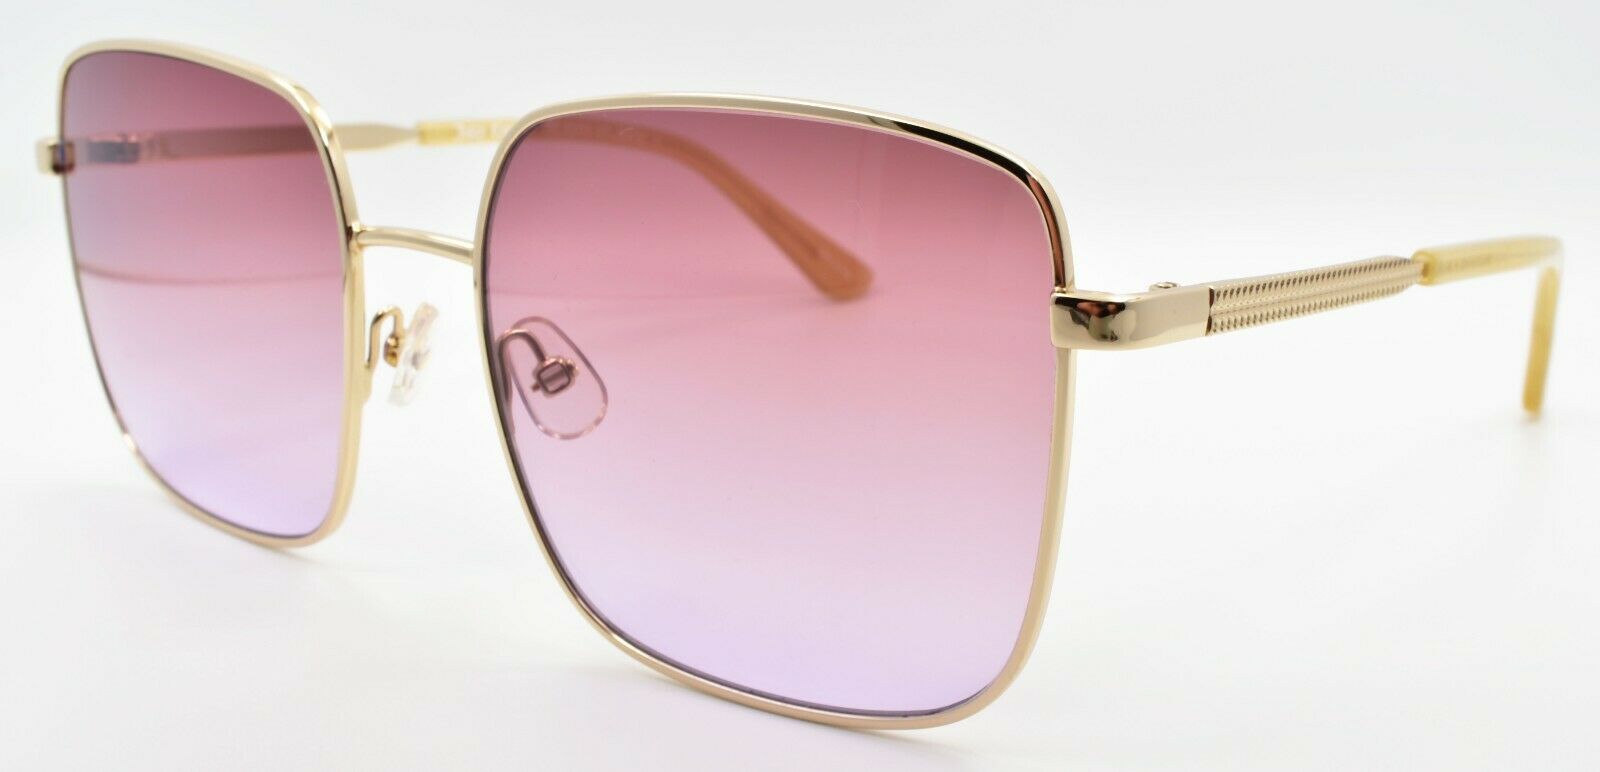 1-Juicy Couture JU605/S 84QER Women's Sunglasses Gold Beige / Brown Gradient-716736151229-IKSpecs